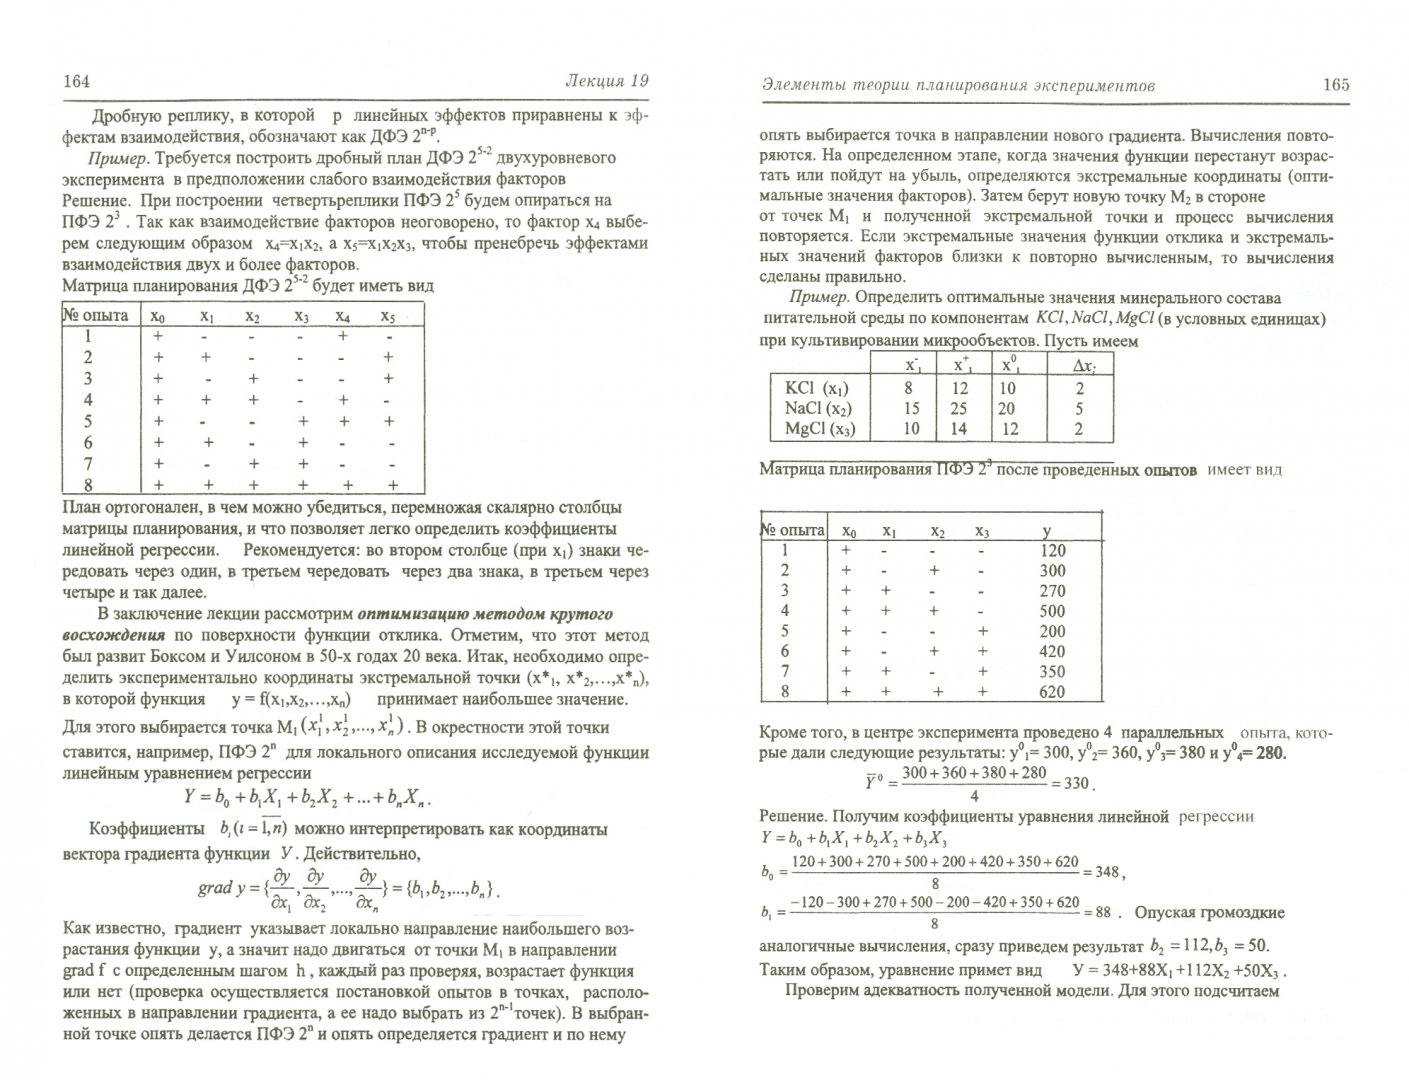 Иллюстрация 1 из 7 для Теория вероятностей в инженерных приложениях. Учебное пособие - Трухан, Кудряшев | Лабиринт - книги. Источник: Лабиринт